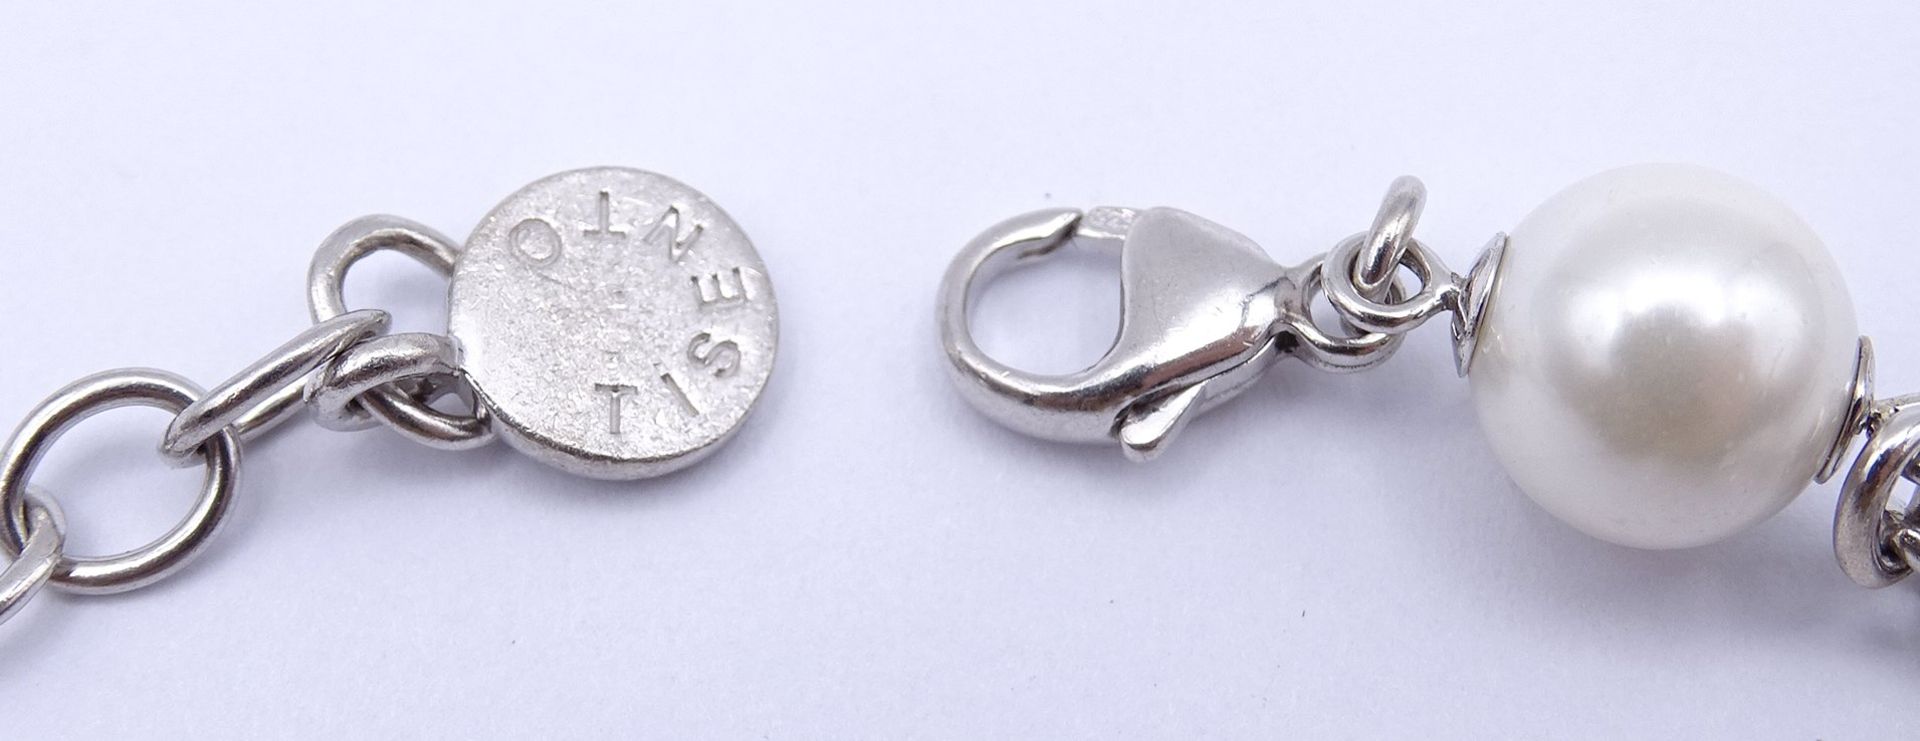 TI Sento Armband mit Perlen,Sterling Silber 0.925, L. 21 - 24cm, 26g. - Bild 3 aus 5